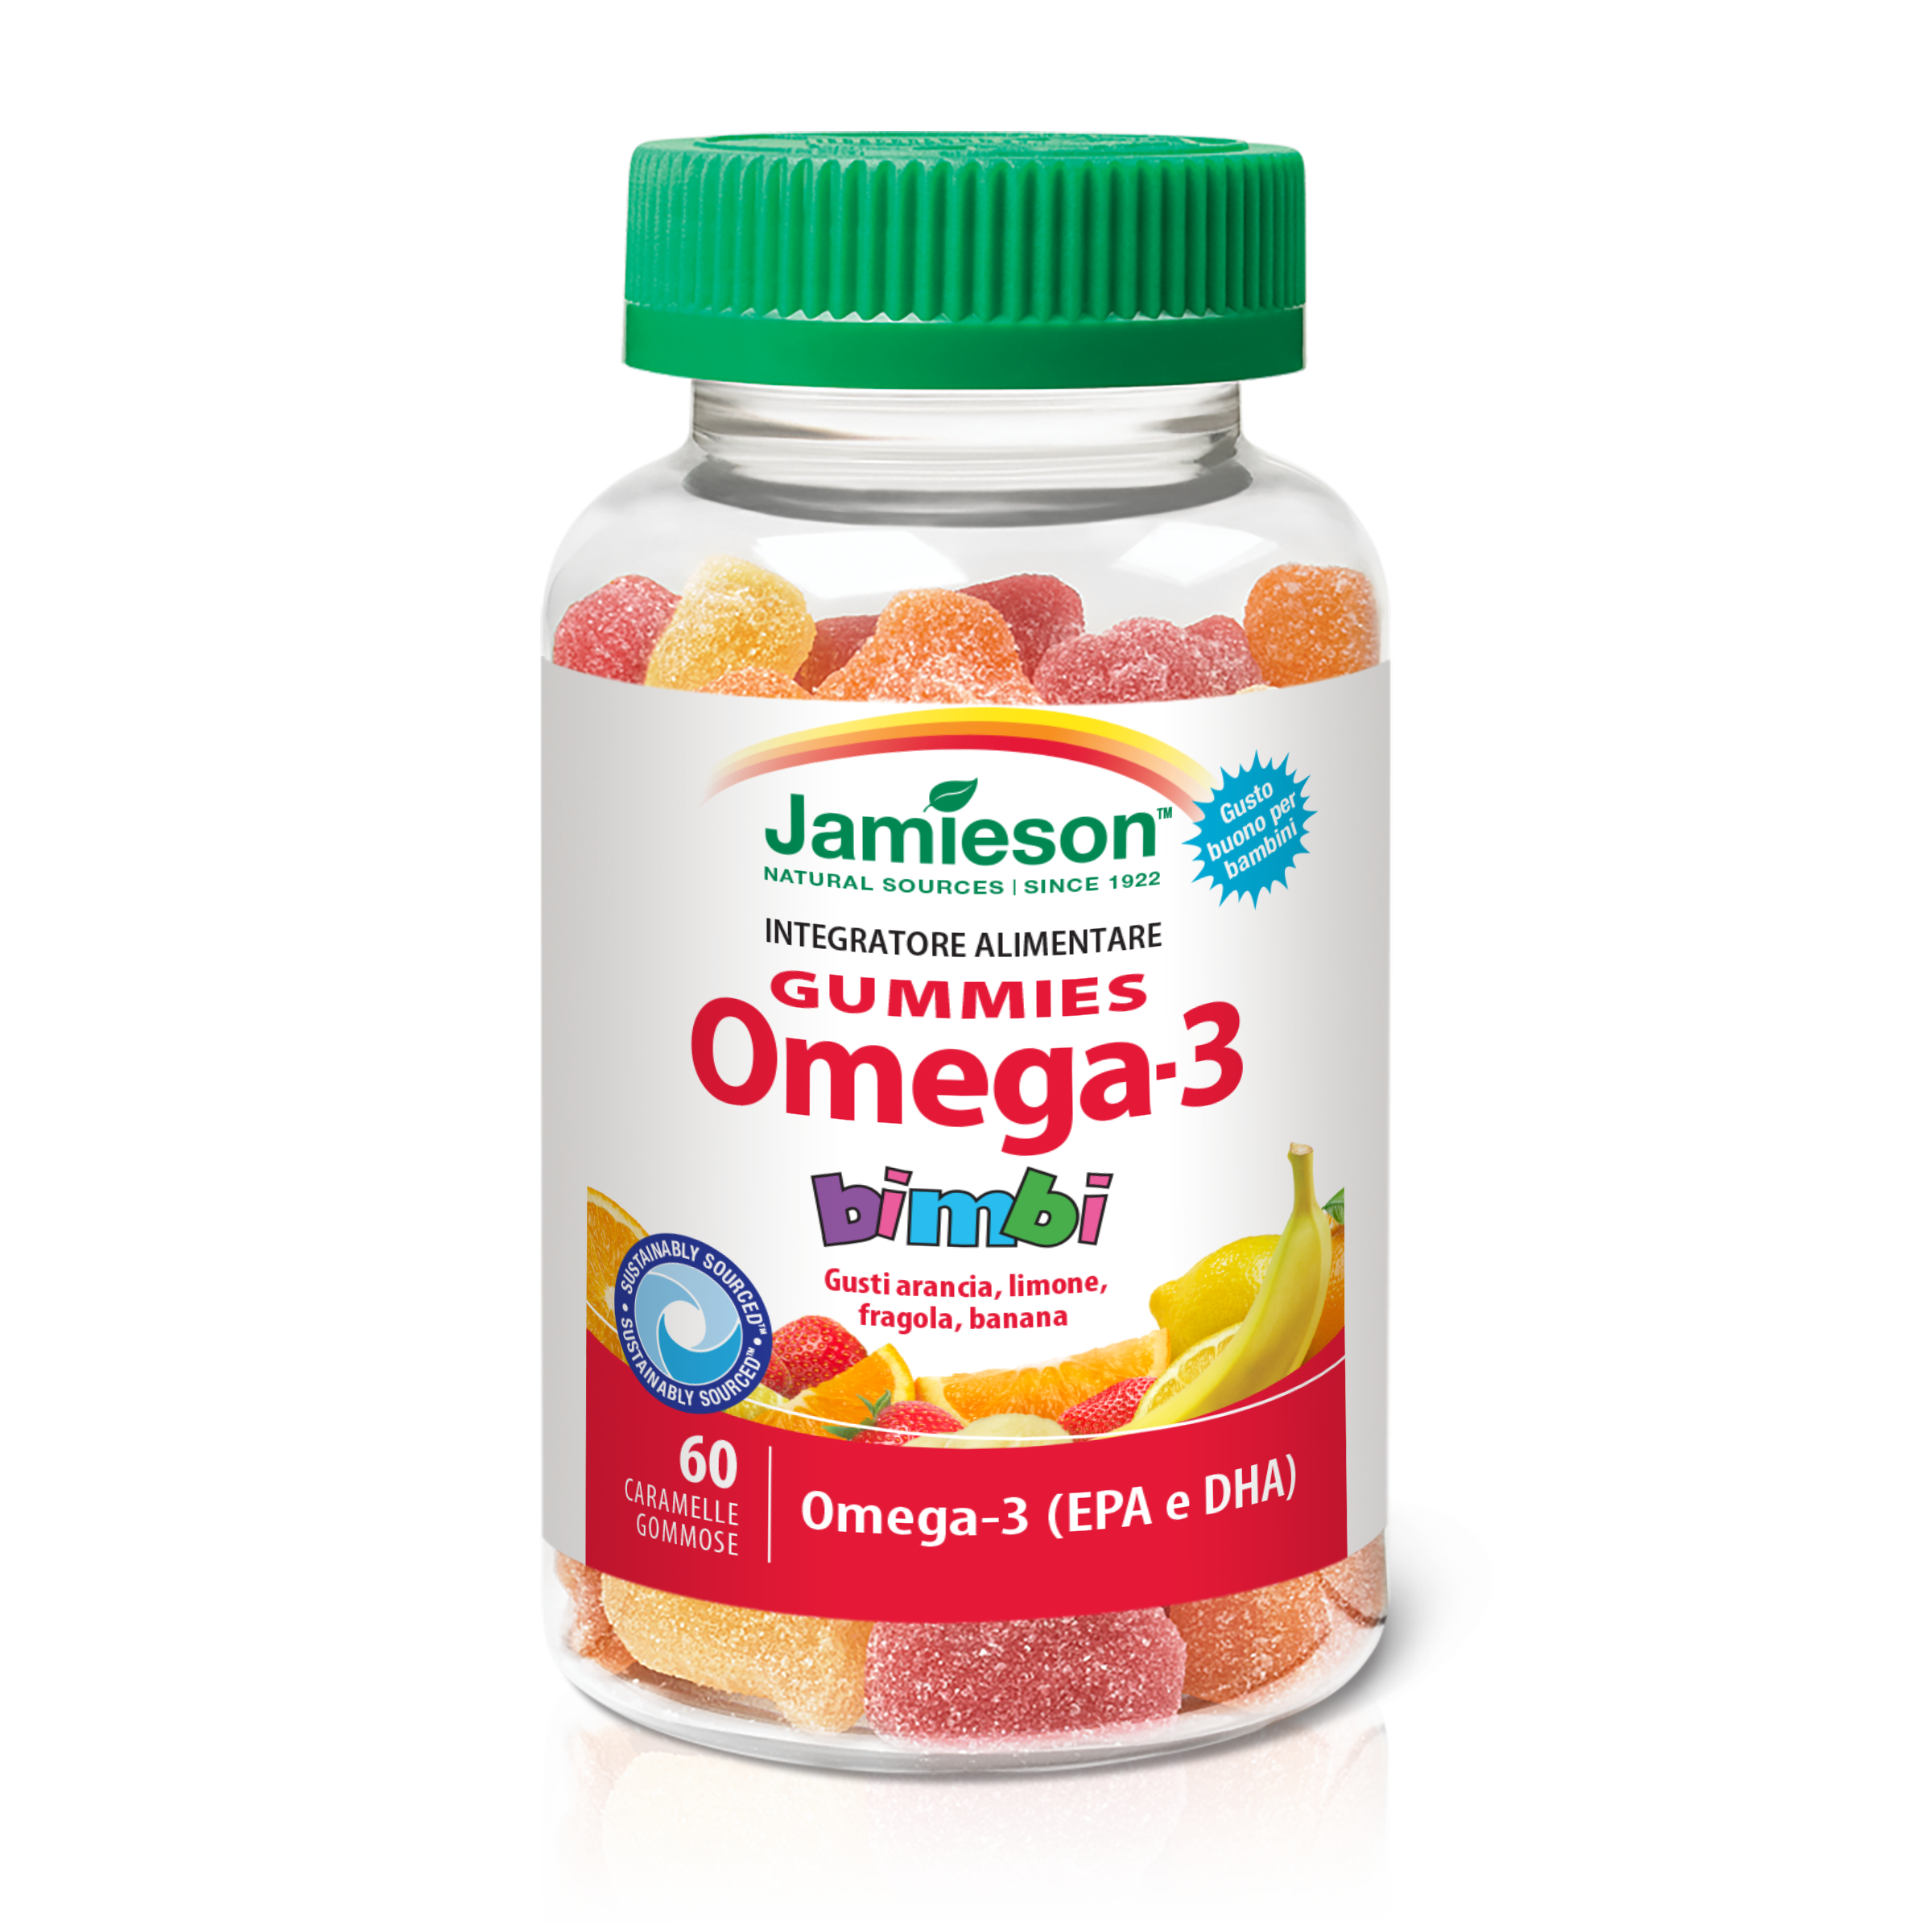 Carrello omega 3 в 1. Омега 3 для бабушки. Omega Gummies. Омега 3 в виде рыбок.